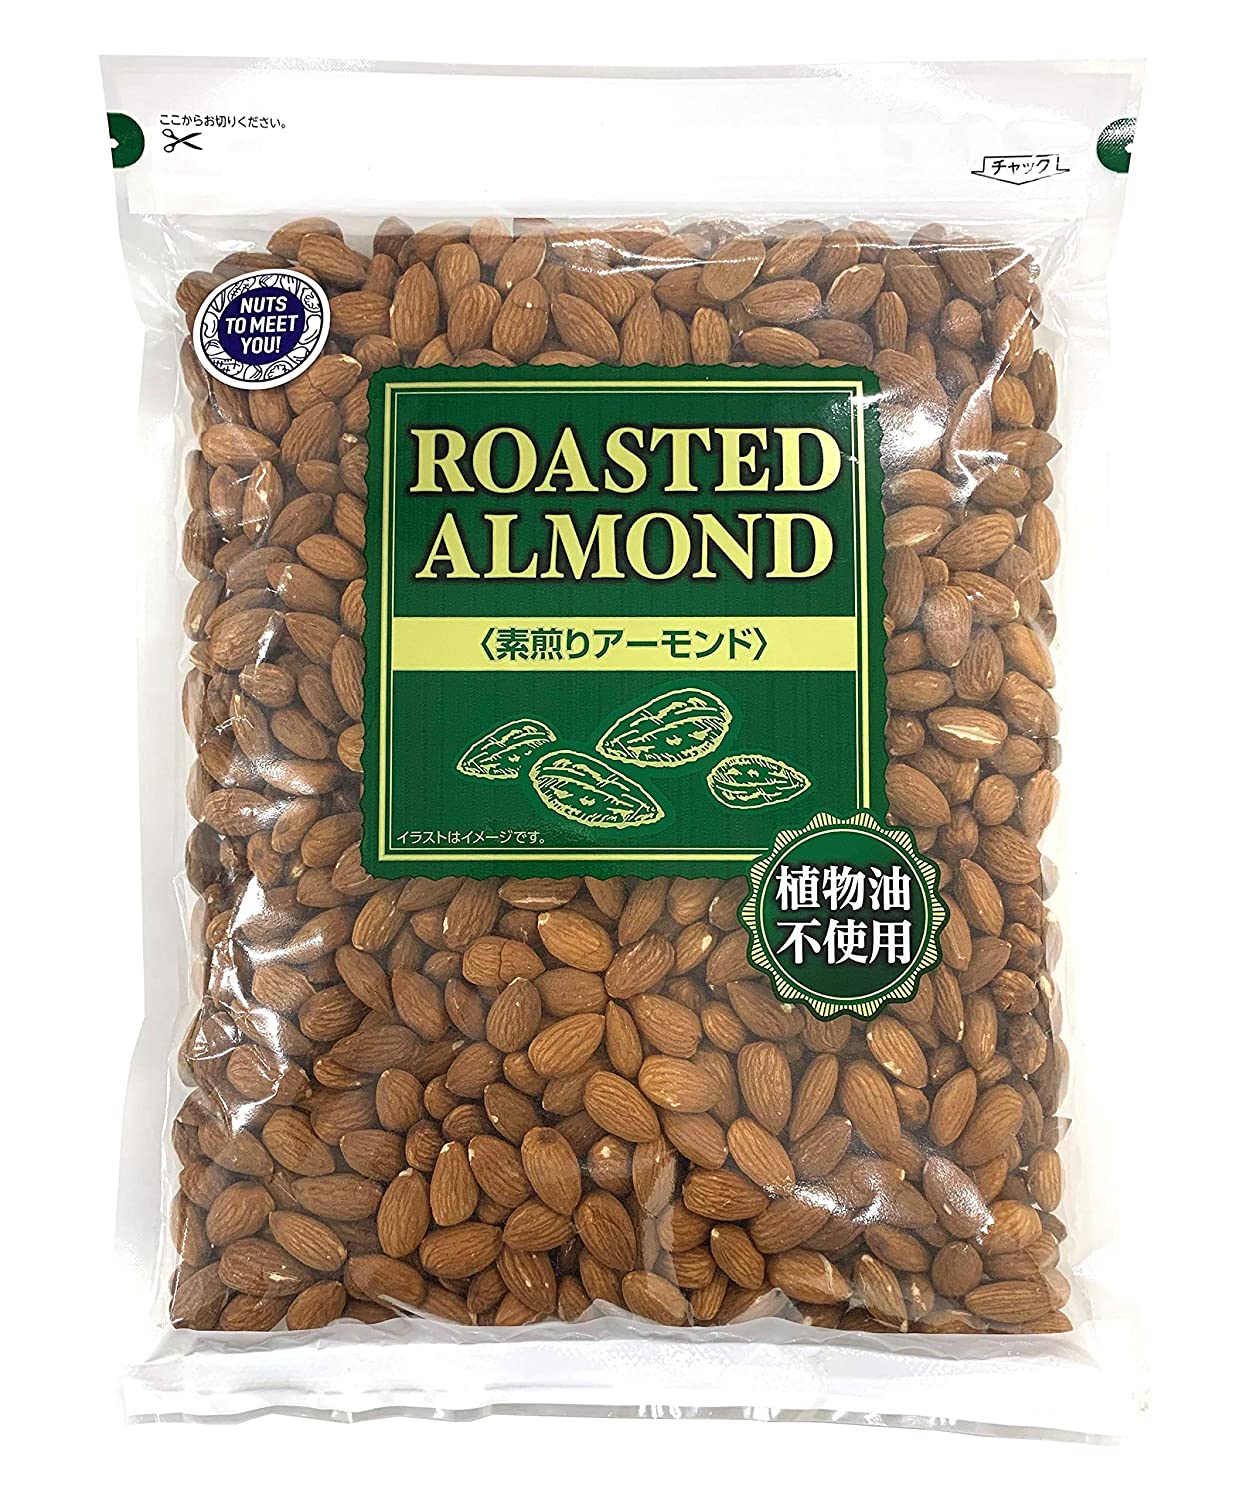 18位：【Amazon.co.jp限定】 NUTS TO MEET YOU アーモンド 1kg 植物油不使用